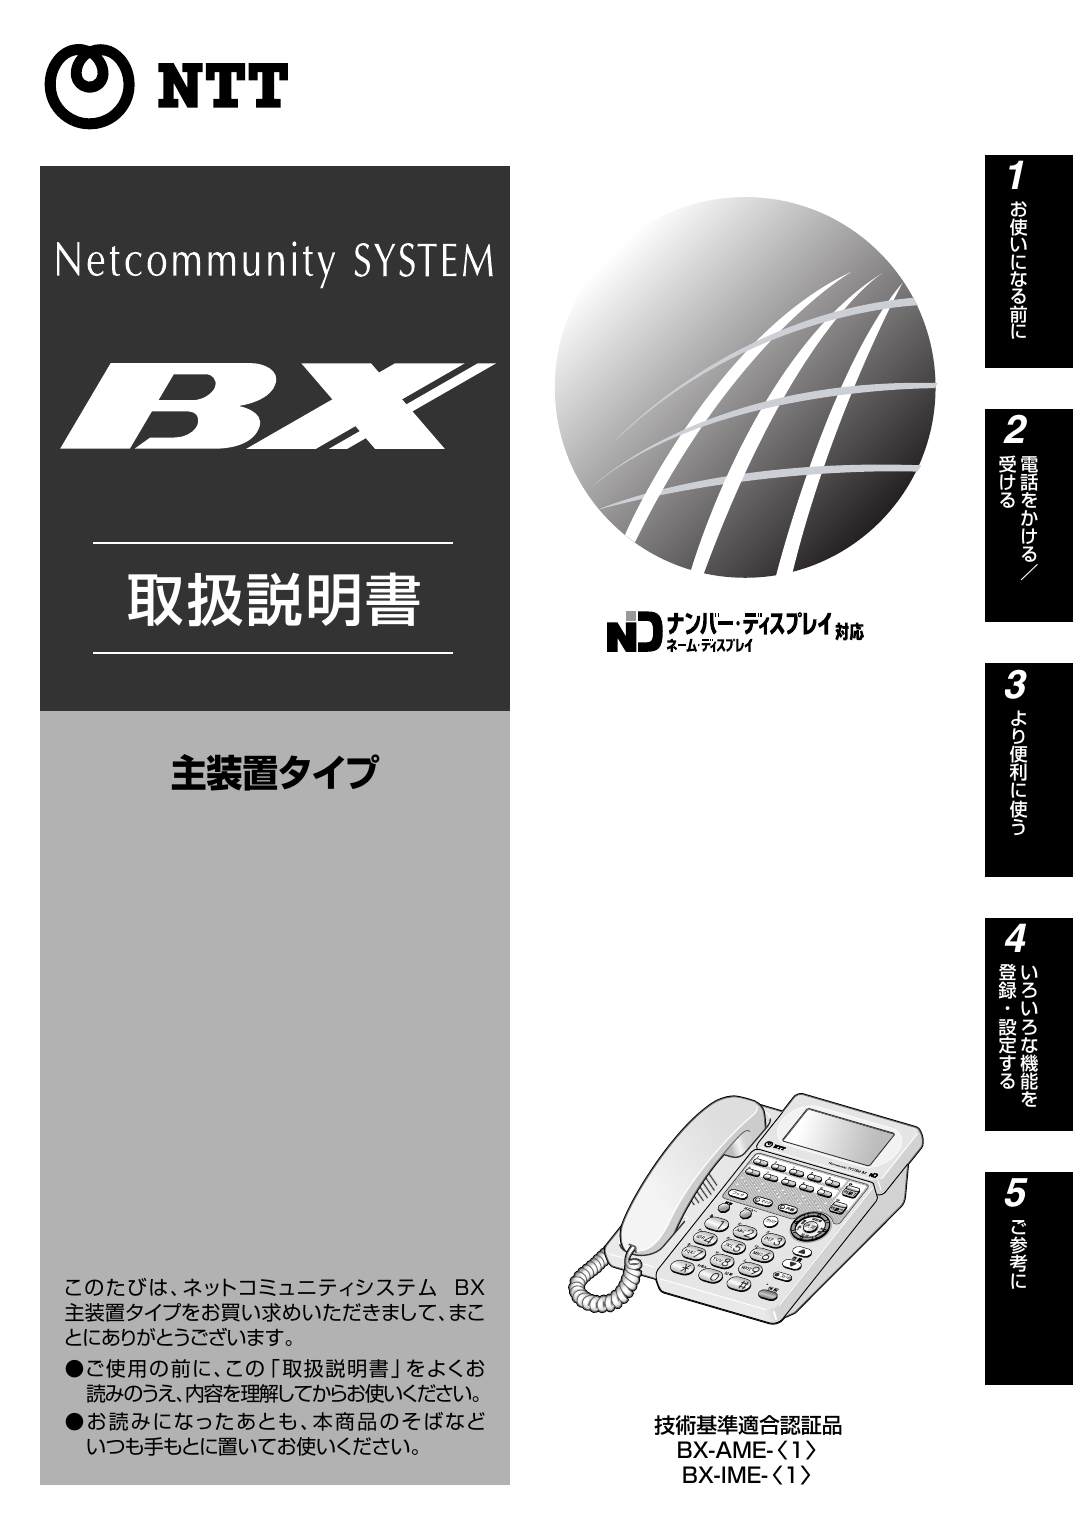 Netcommunity System Bx主装置タイプ取扱説明書 Manualzz